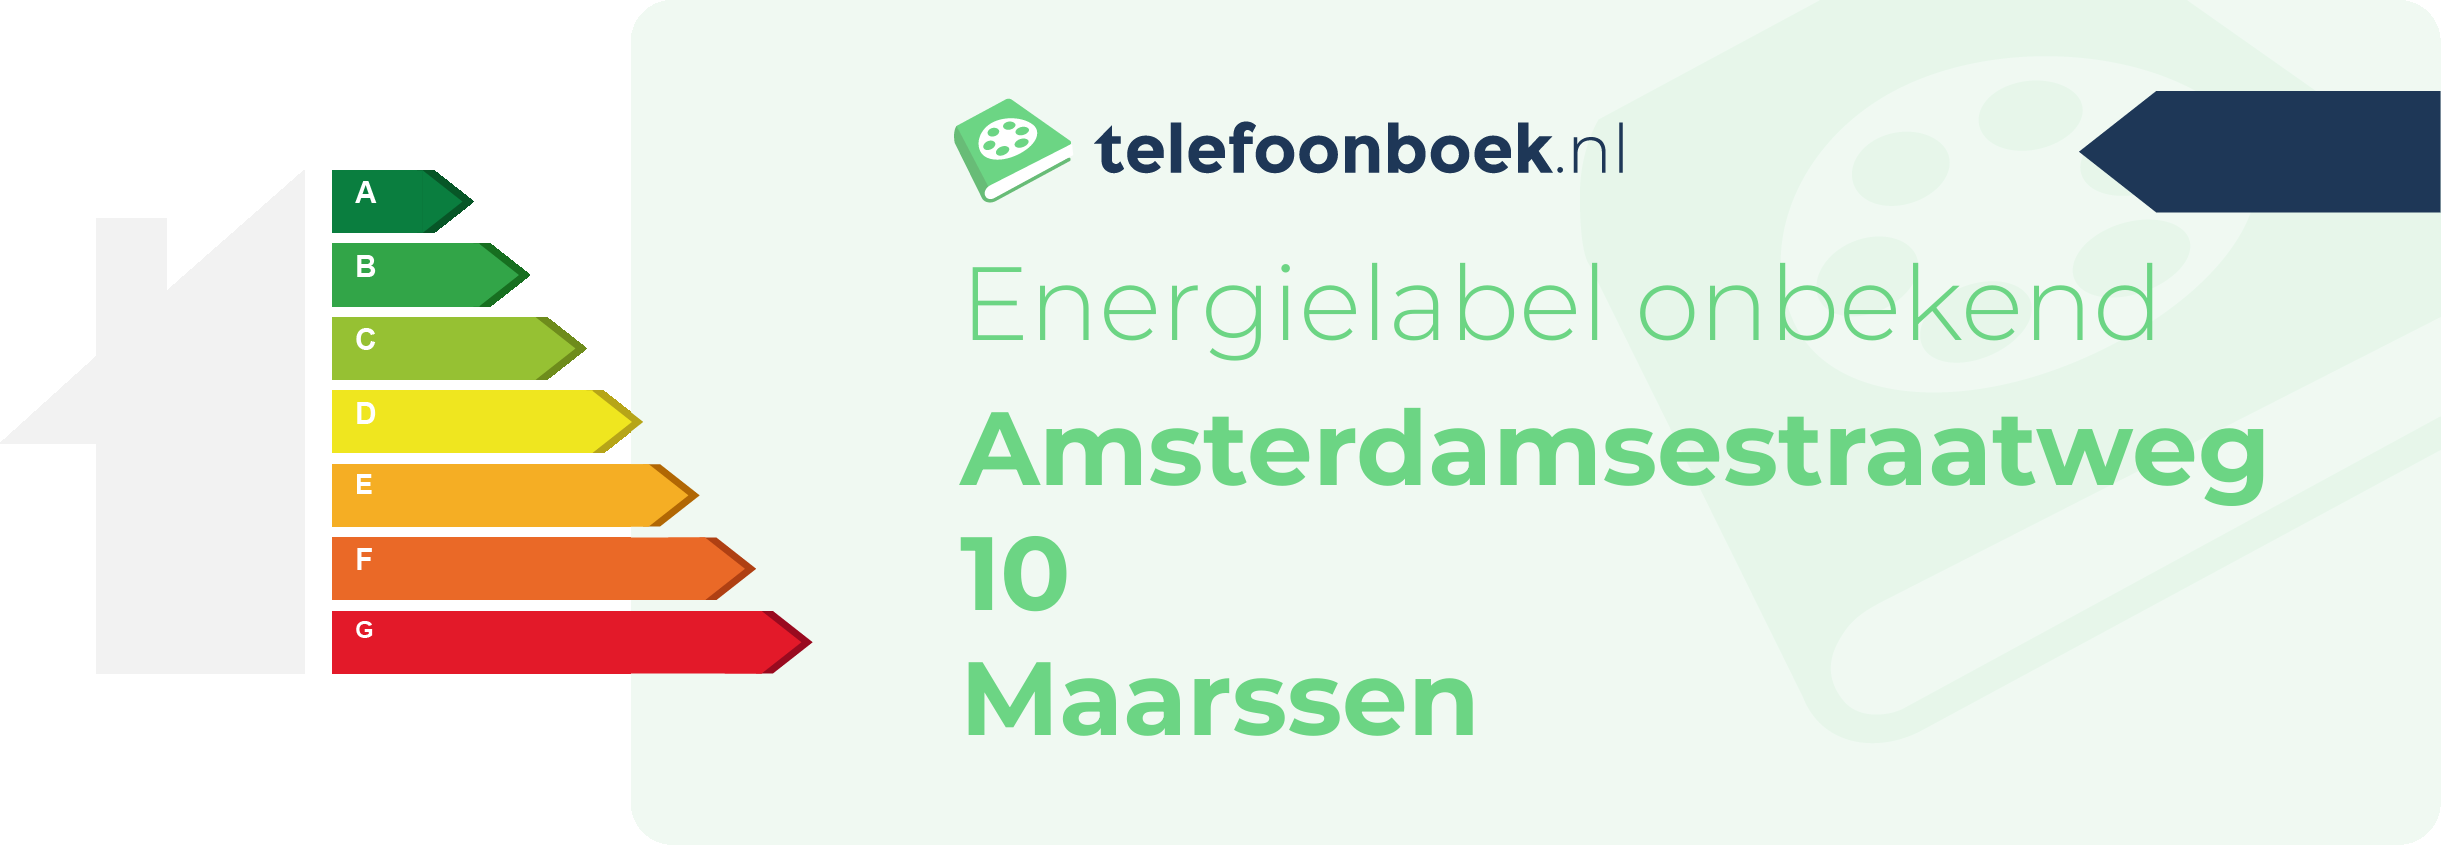 Energielabel Amsterdamsestraatweg 10 Maarssen